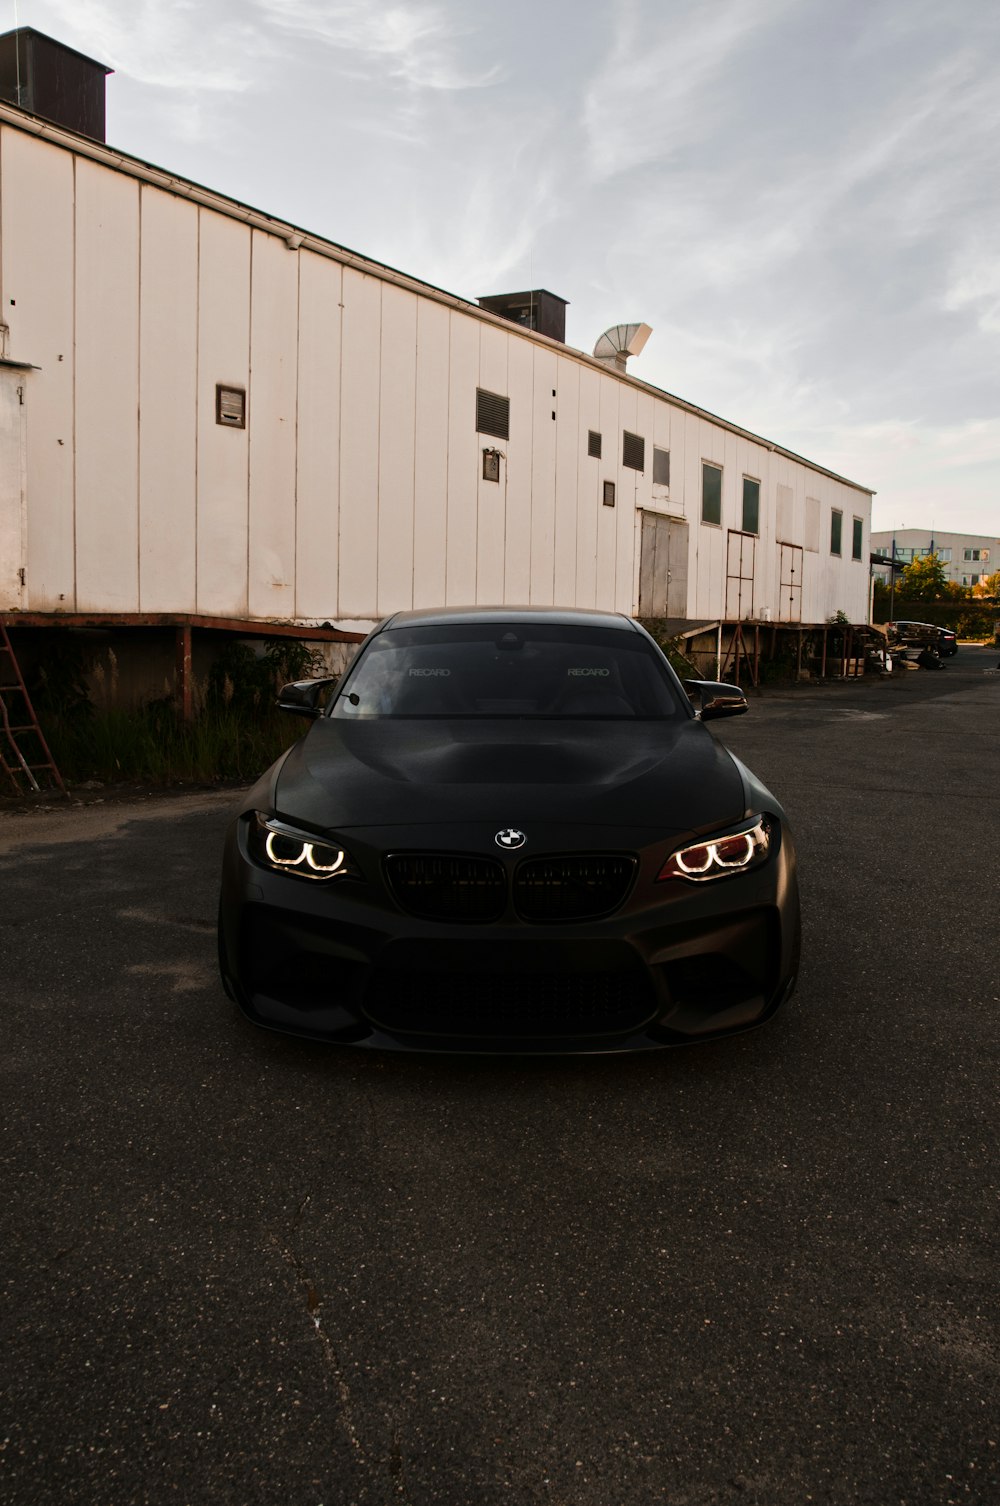 Voiture BMW noire garée près d’un garage blanc pendant la journée